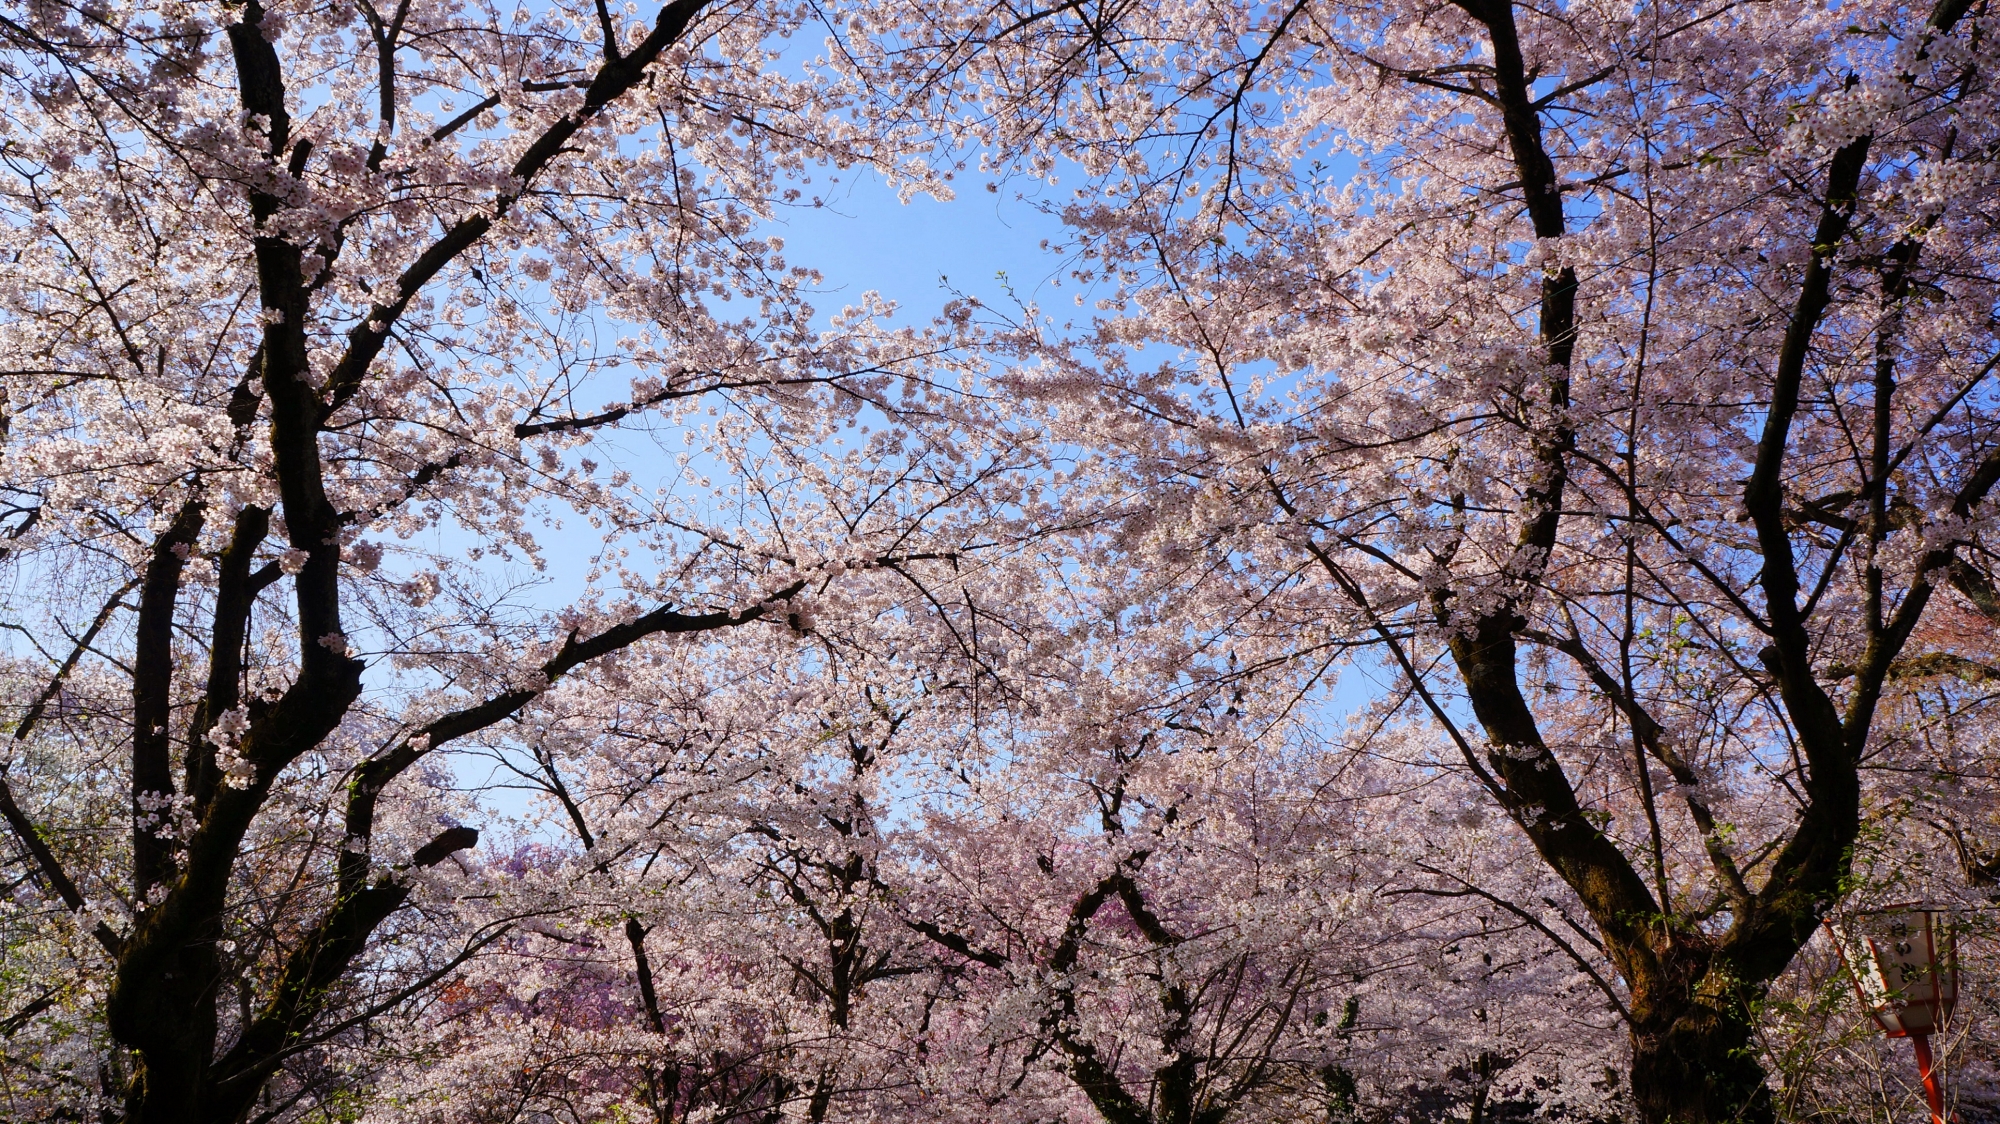 夢のような桜の空間